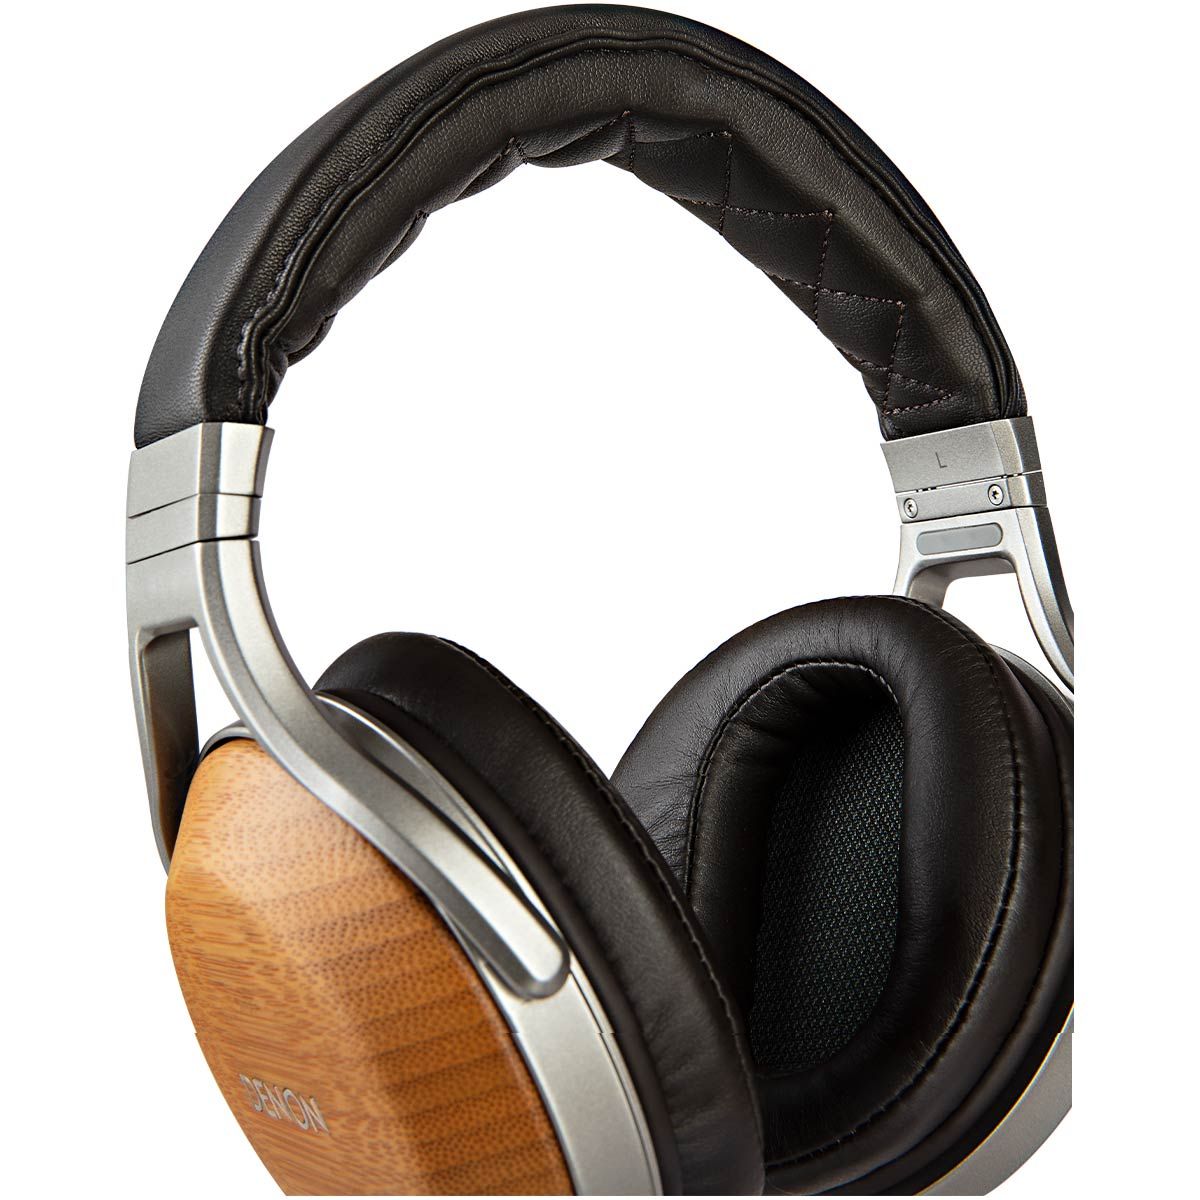 Denon AH-D9200 Bamboo Over-Ear Premium Headphones | Audio Advice